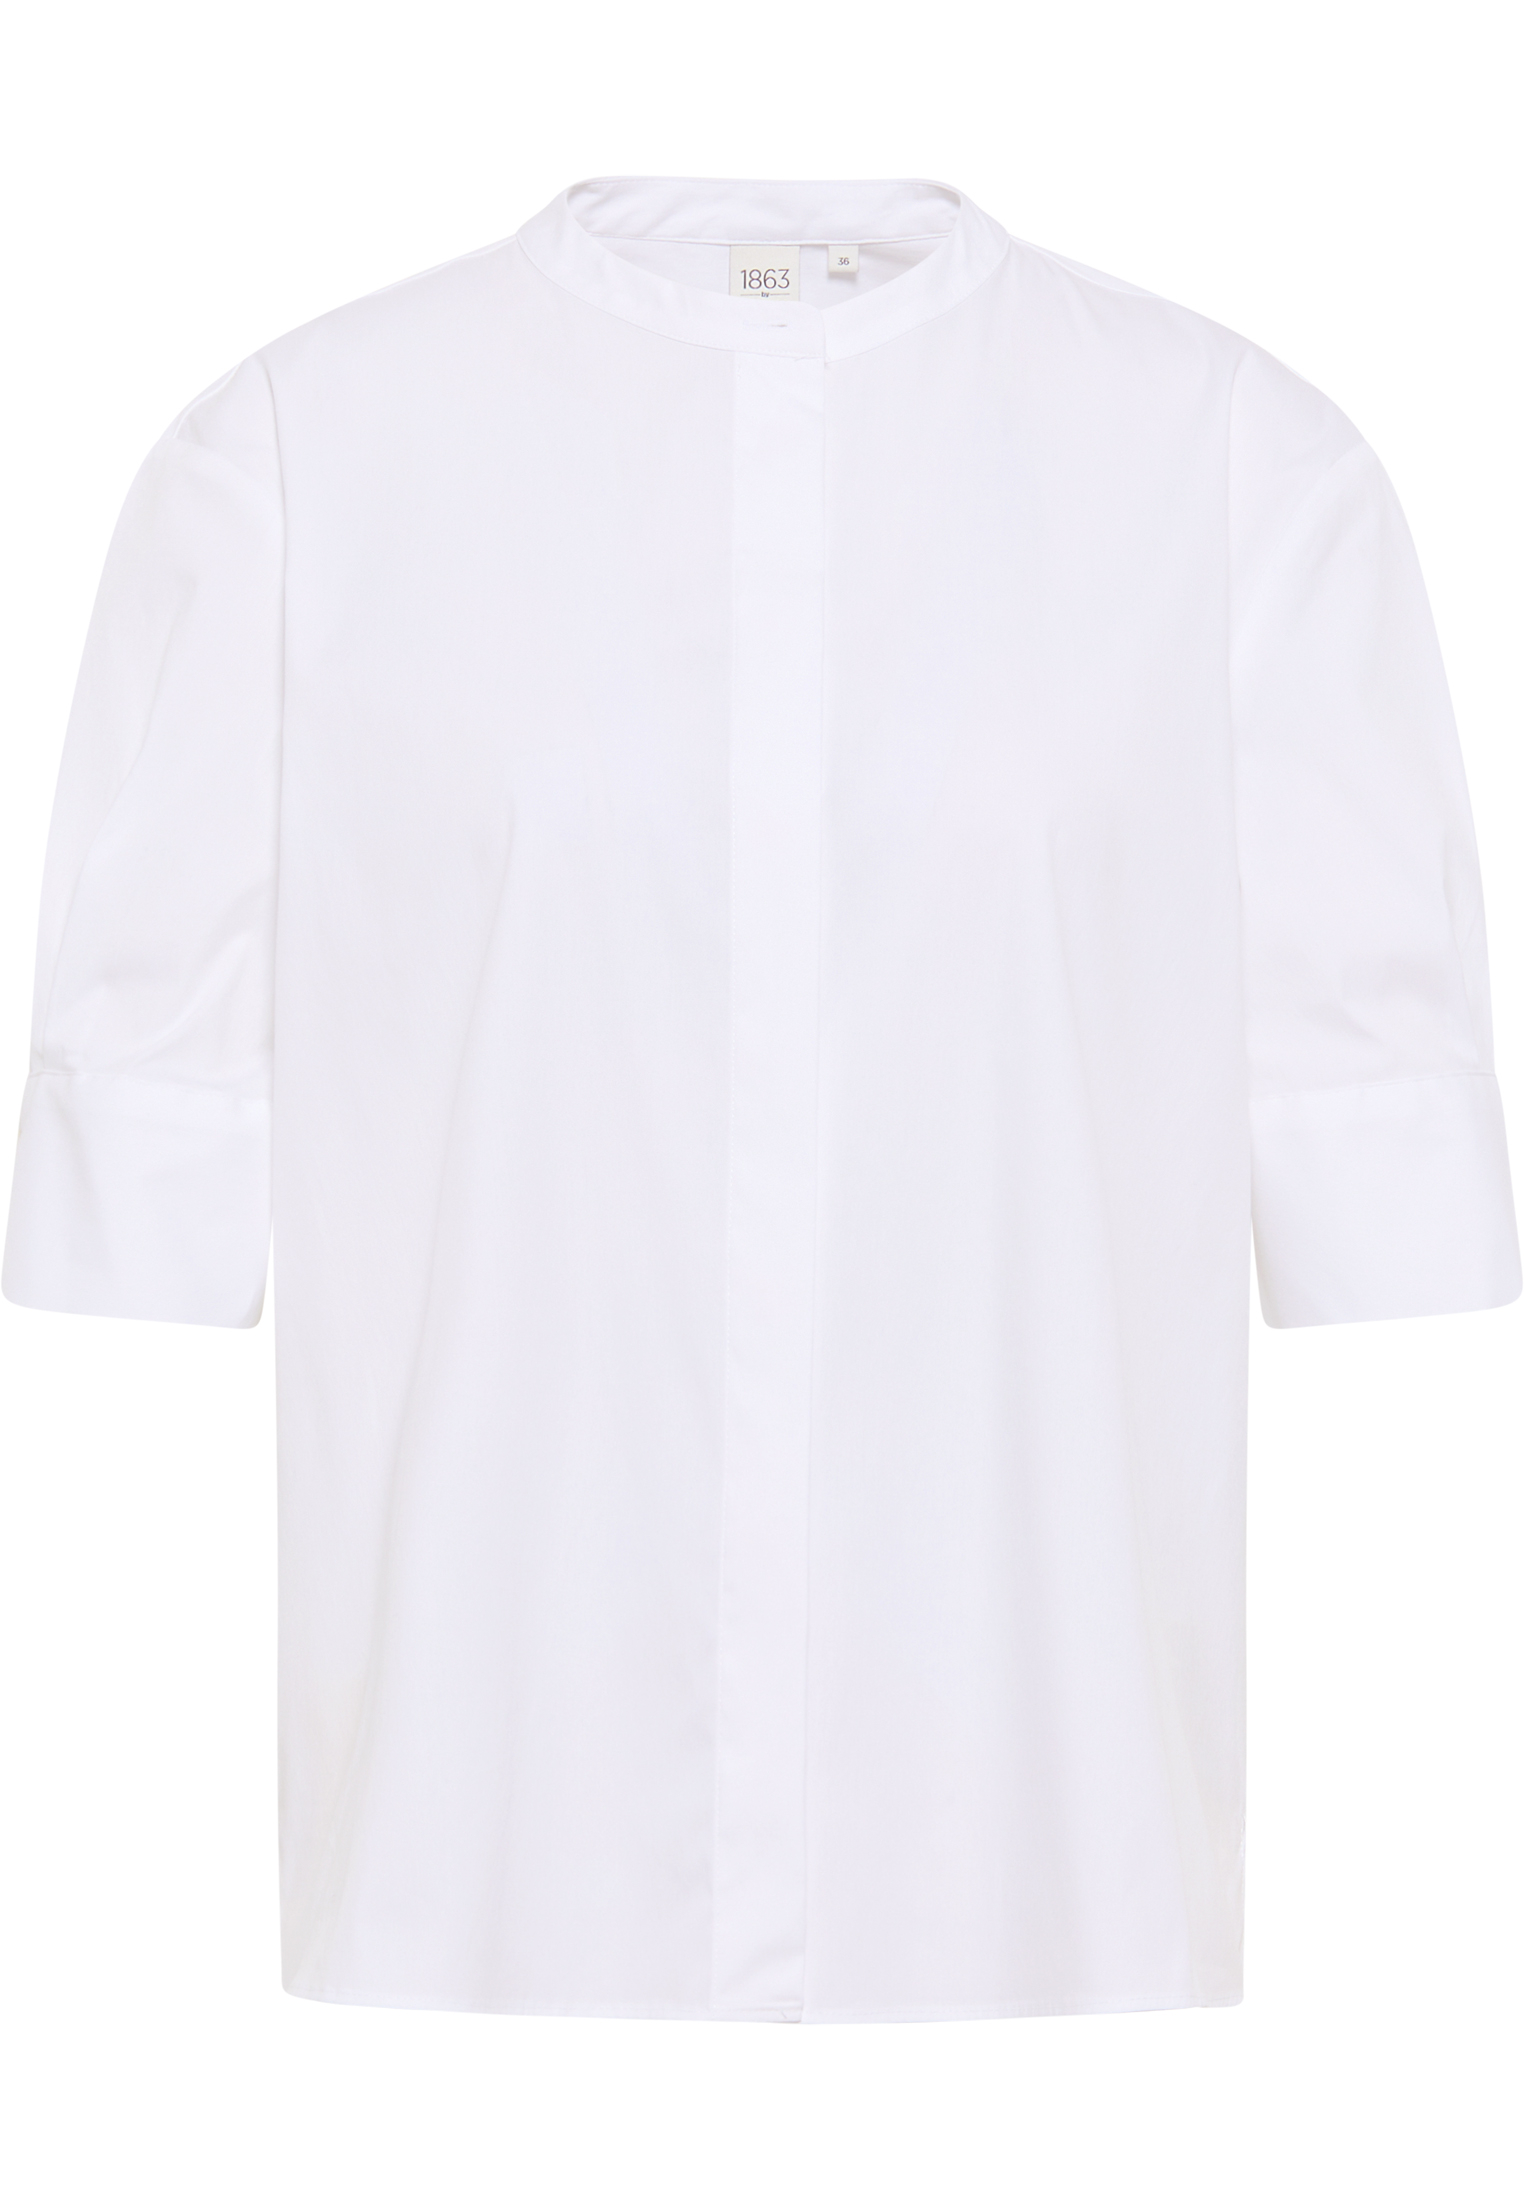 Signature Shirt in weiß unifarben